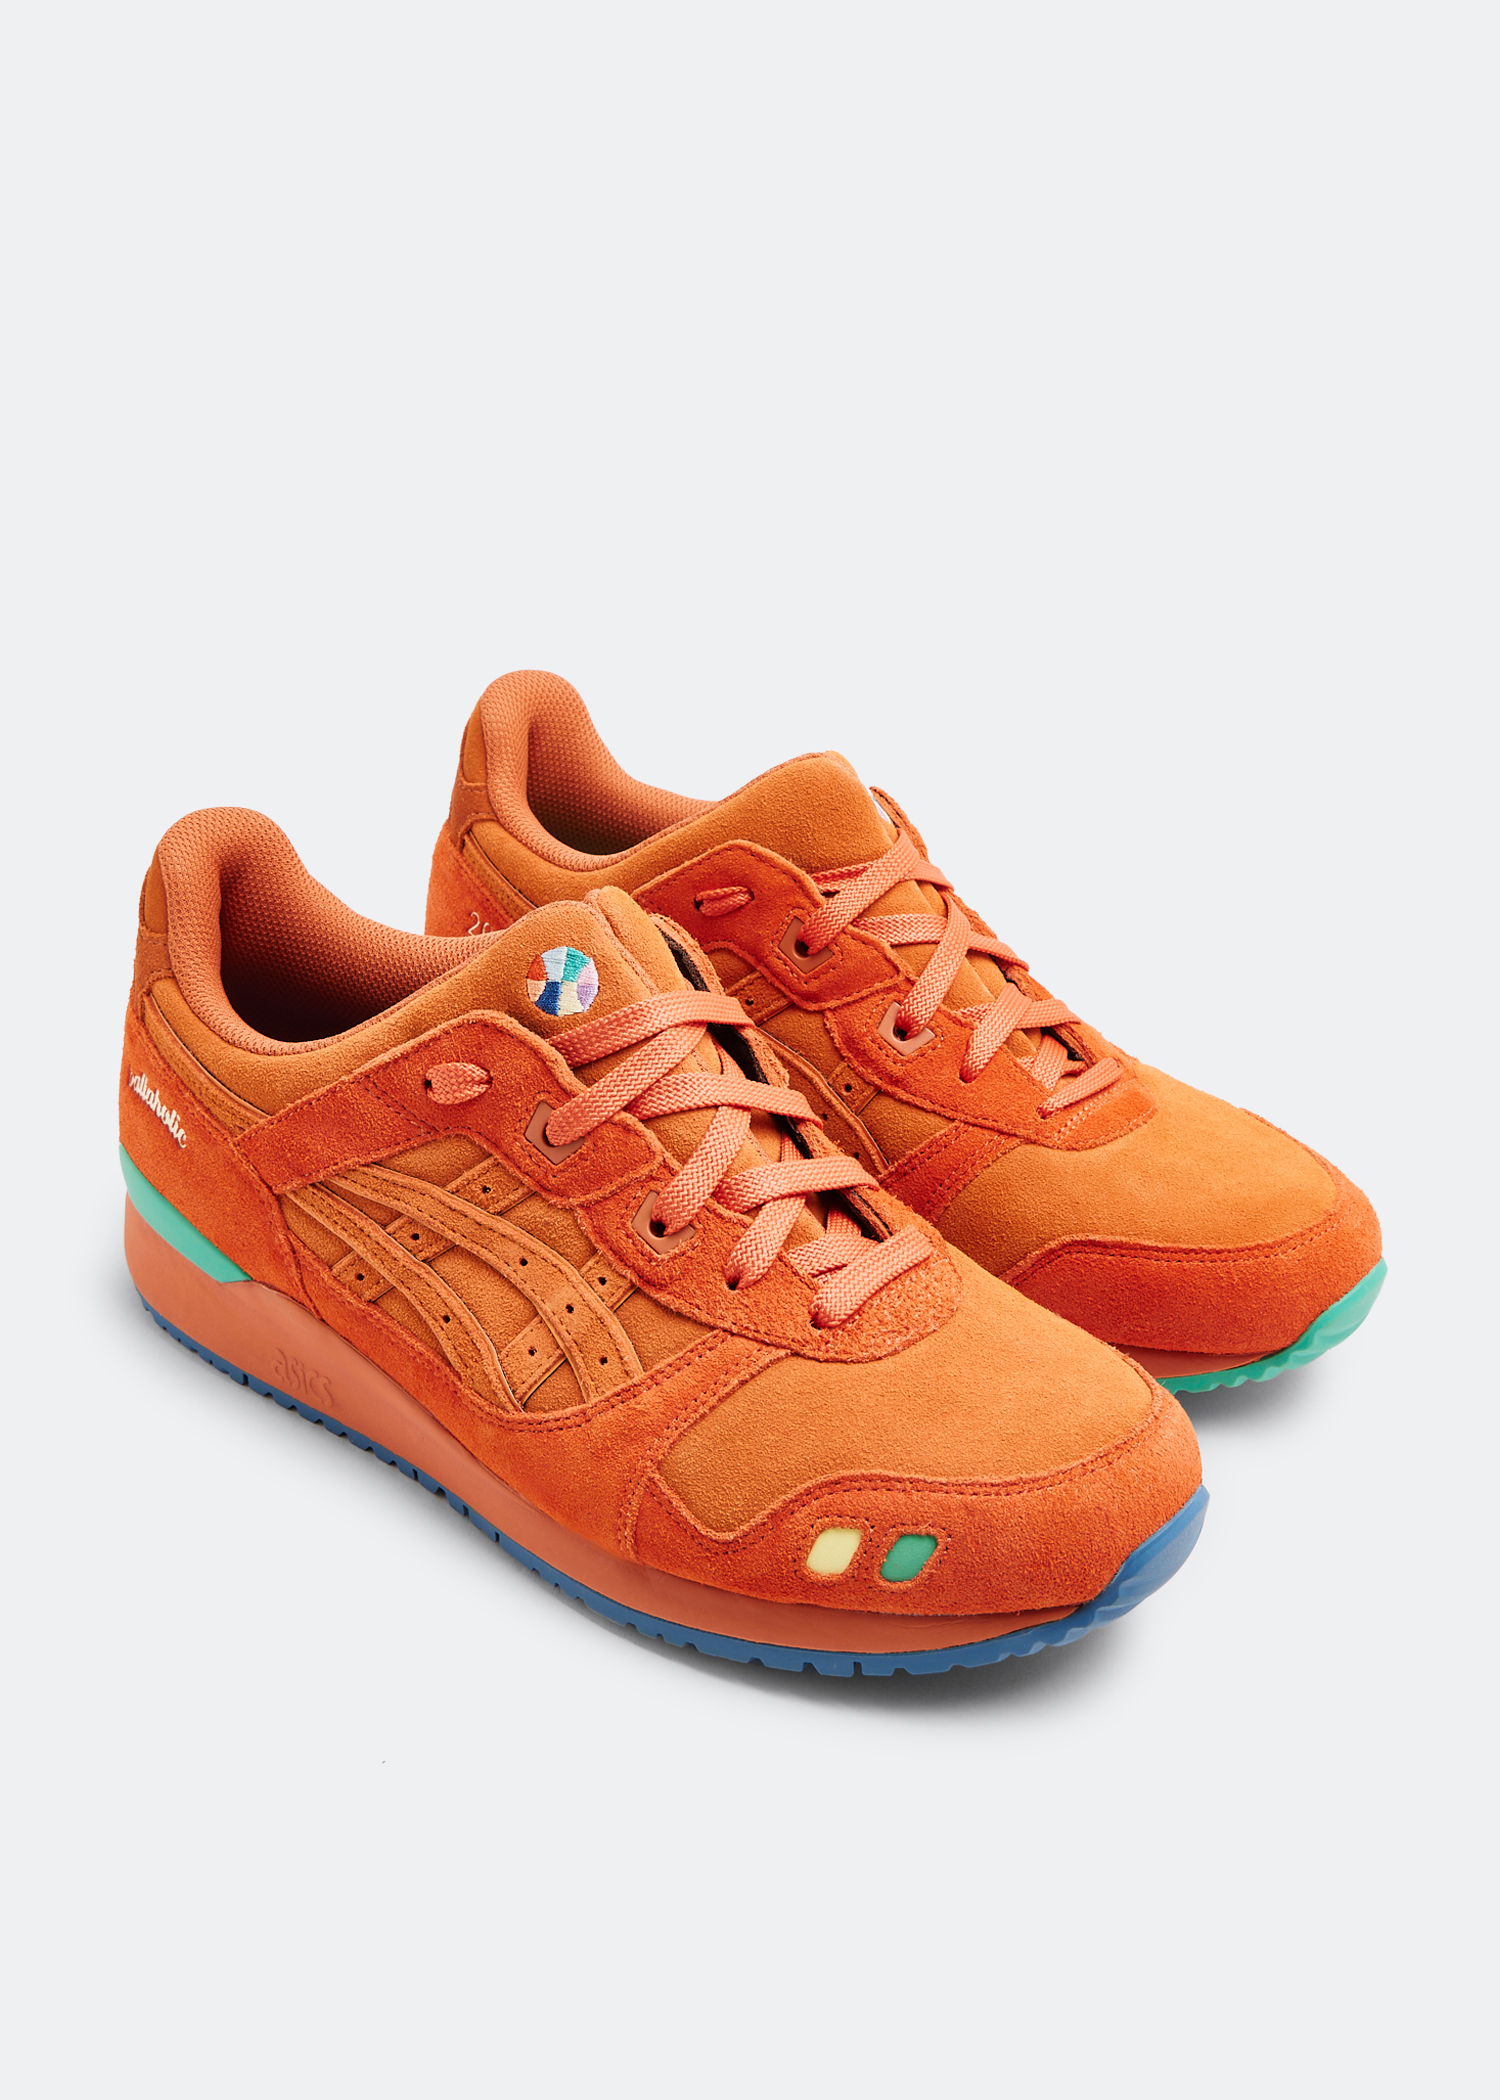 Asics x ballaholic Gel Lyte III OG sneakers for Men - Orange in 